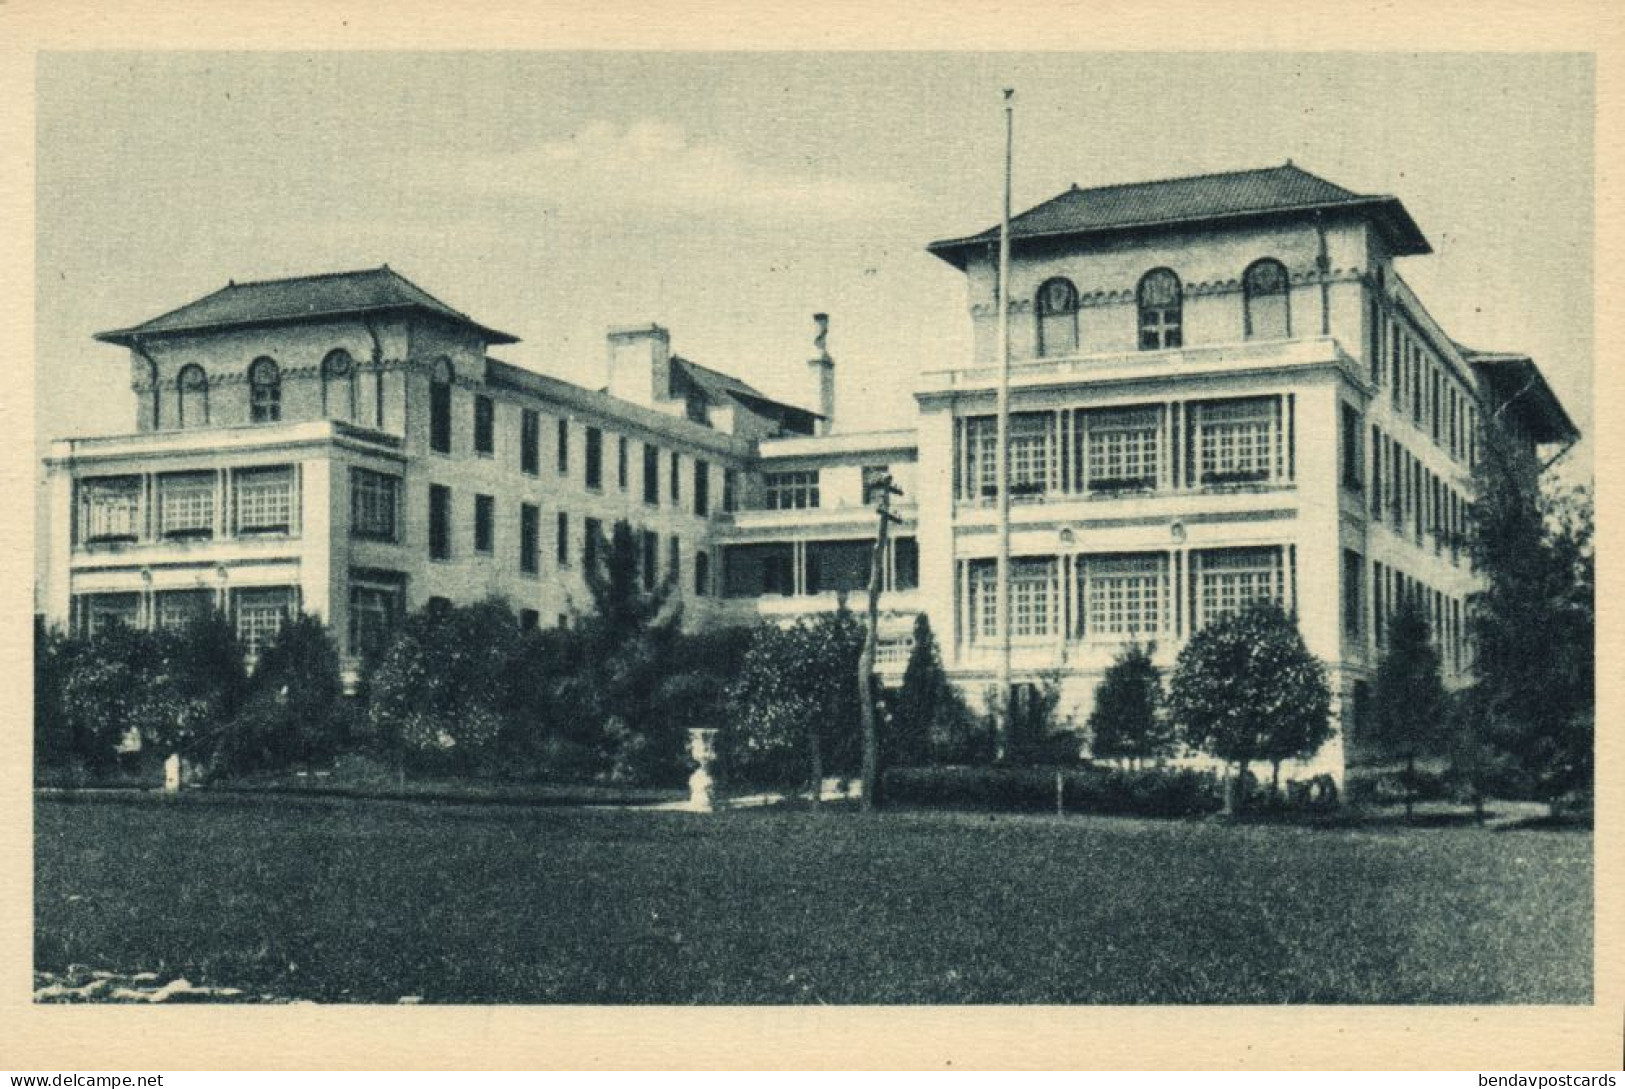 Cuba, HAVANA, Hotel Almendares (1930s) Postcard - Cuba